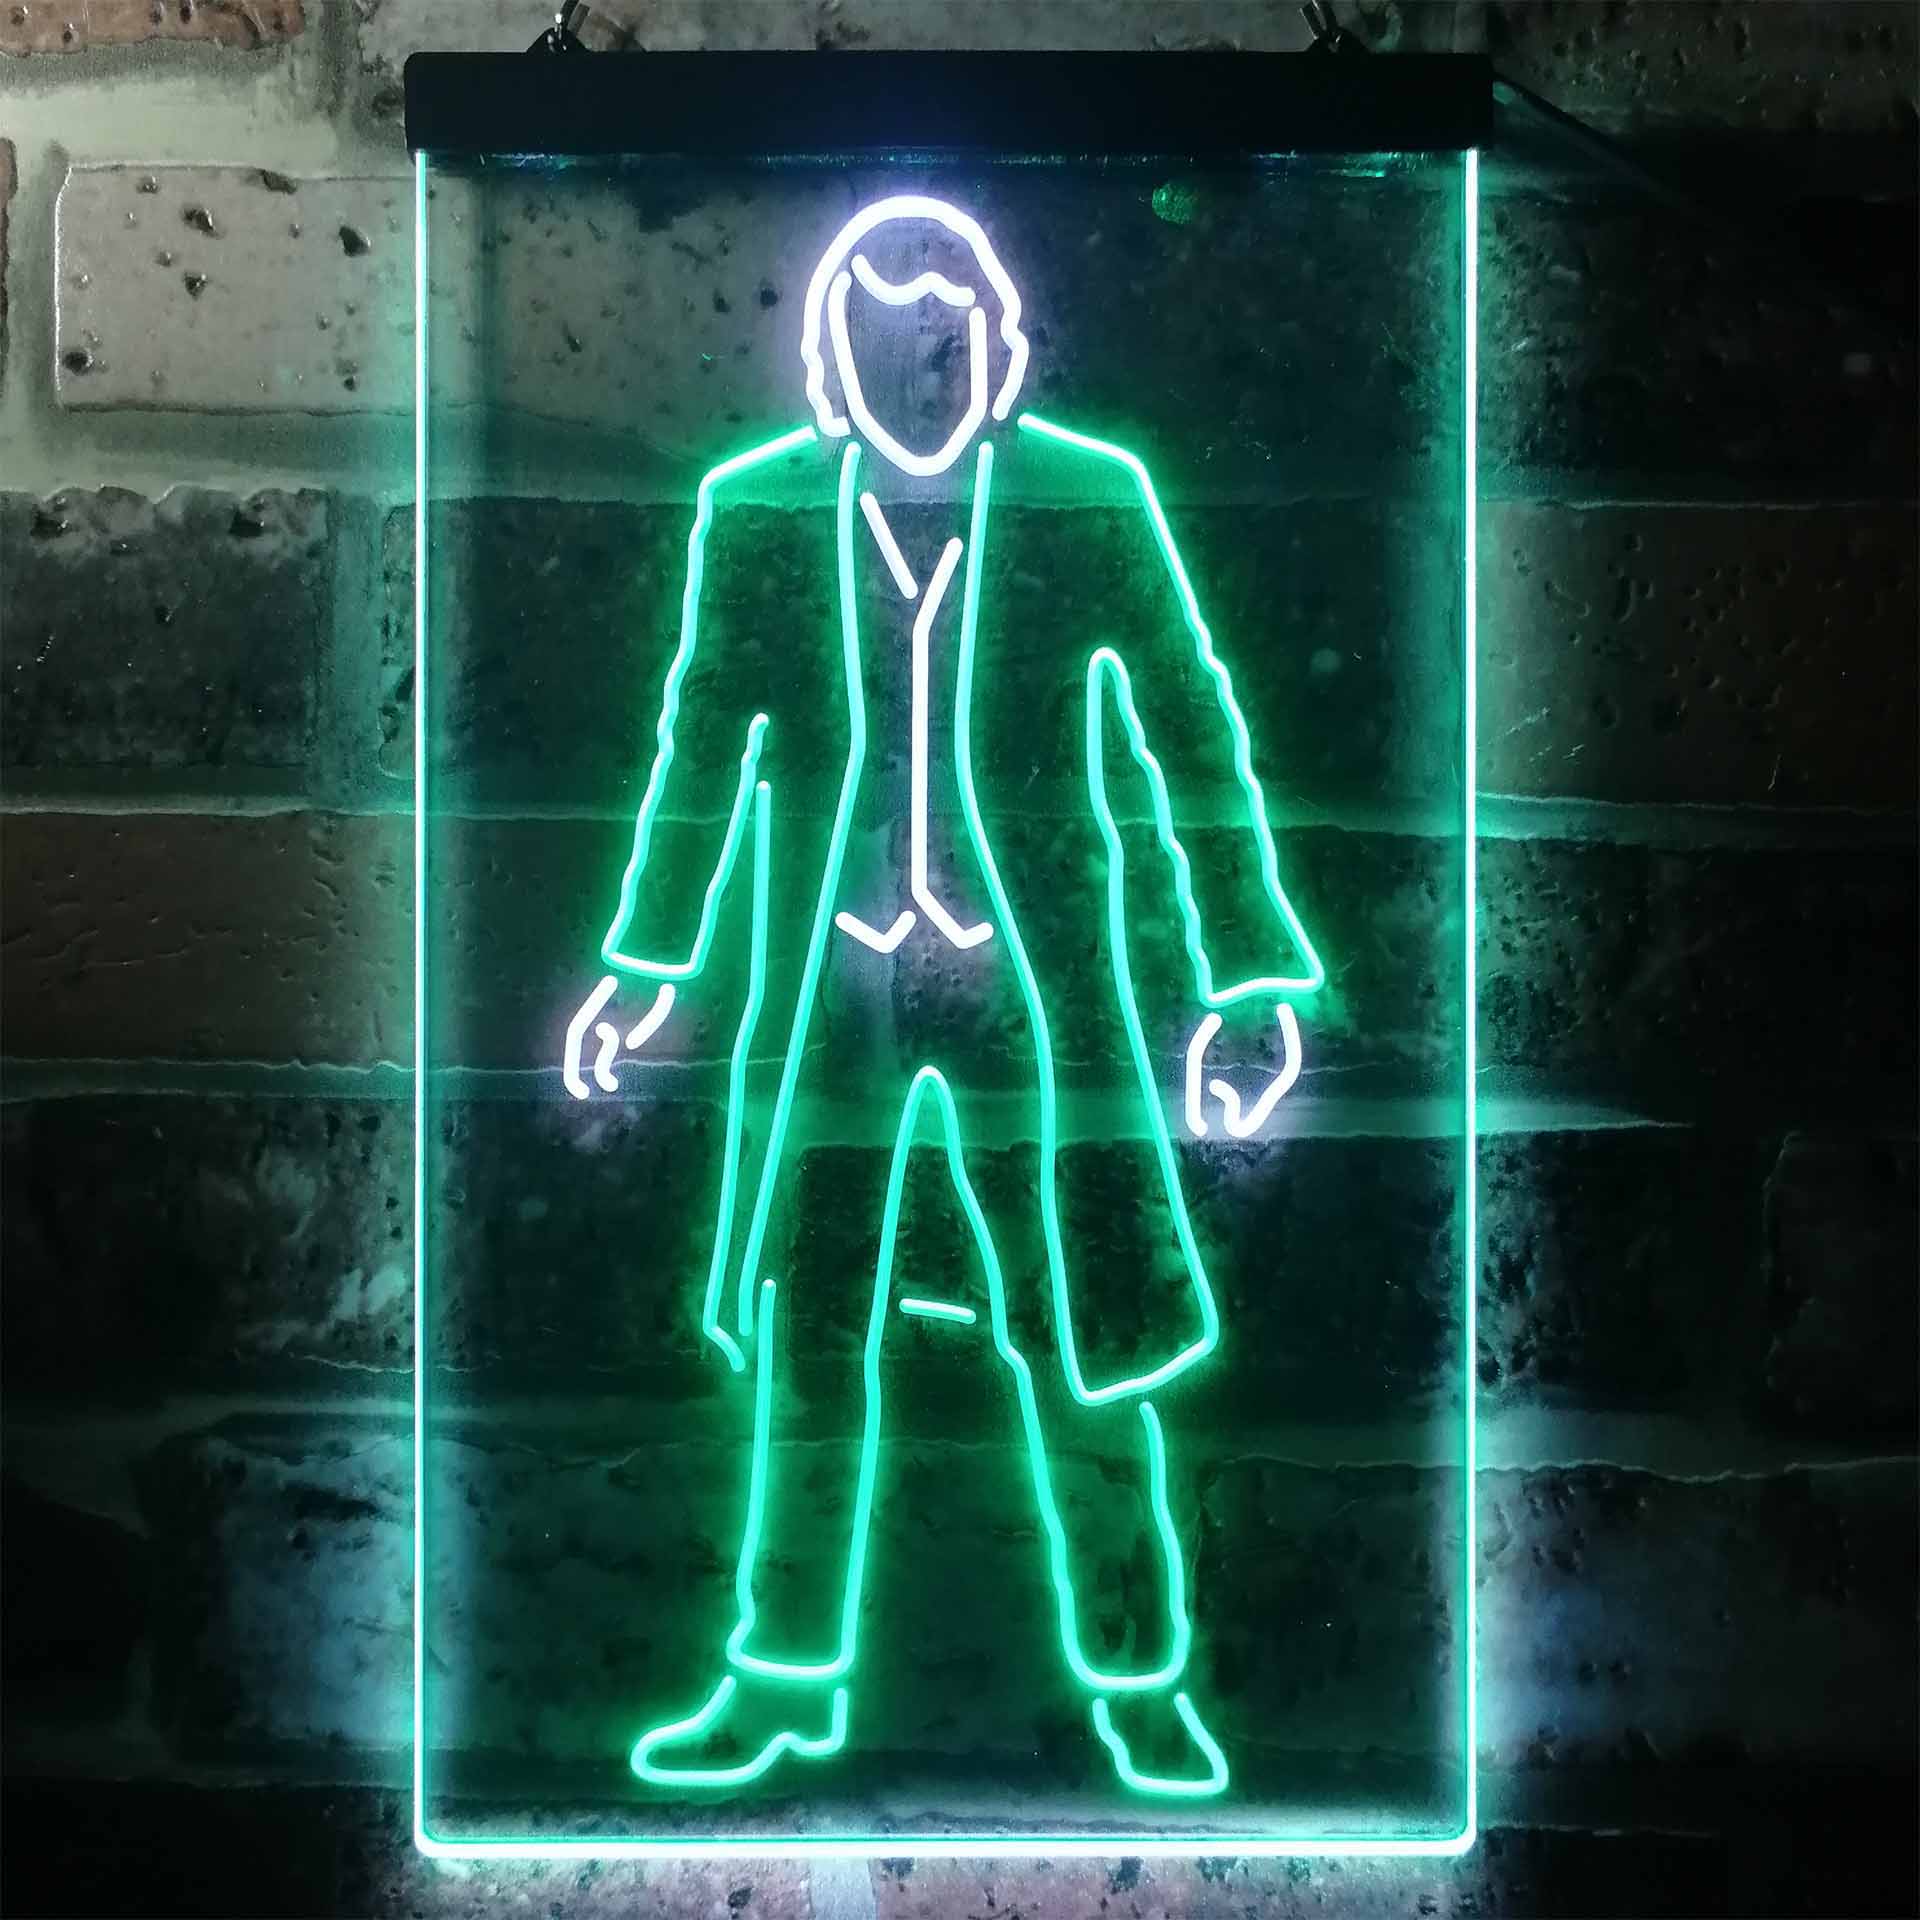 DC Comics Joker Game Room Neon Light LED Sign